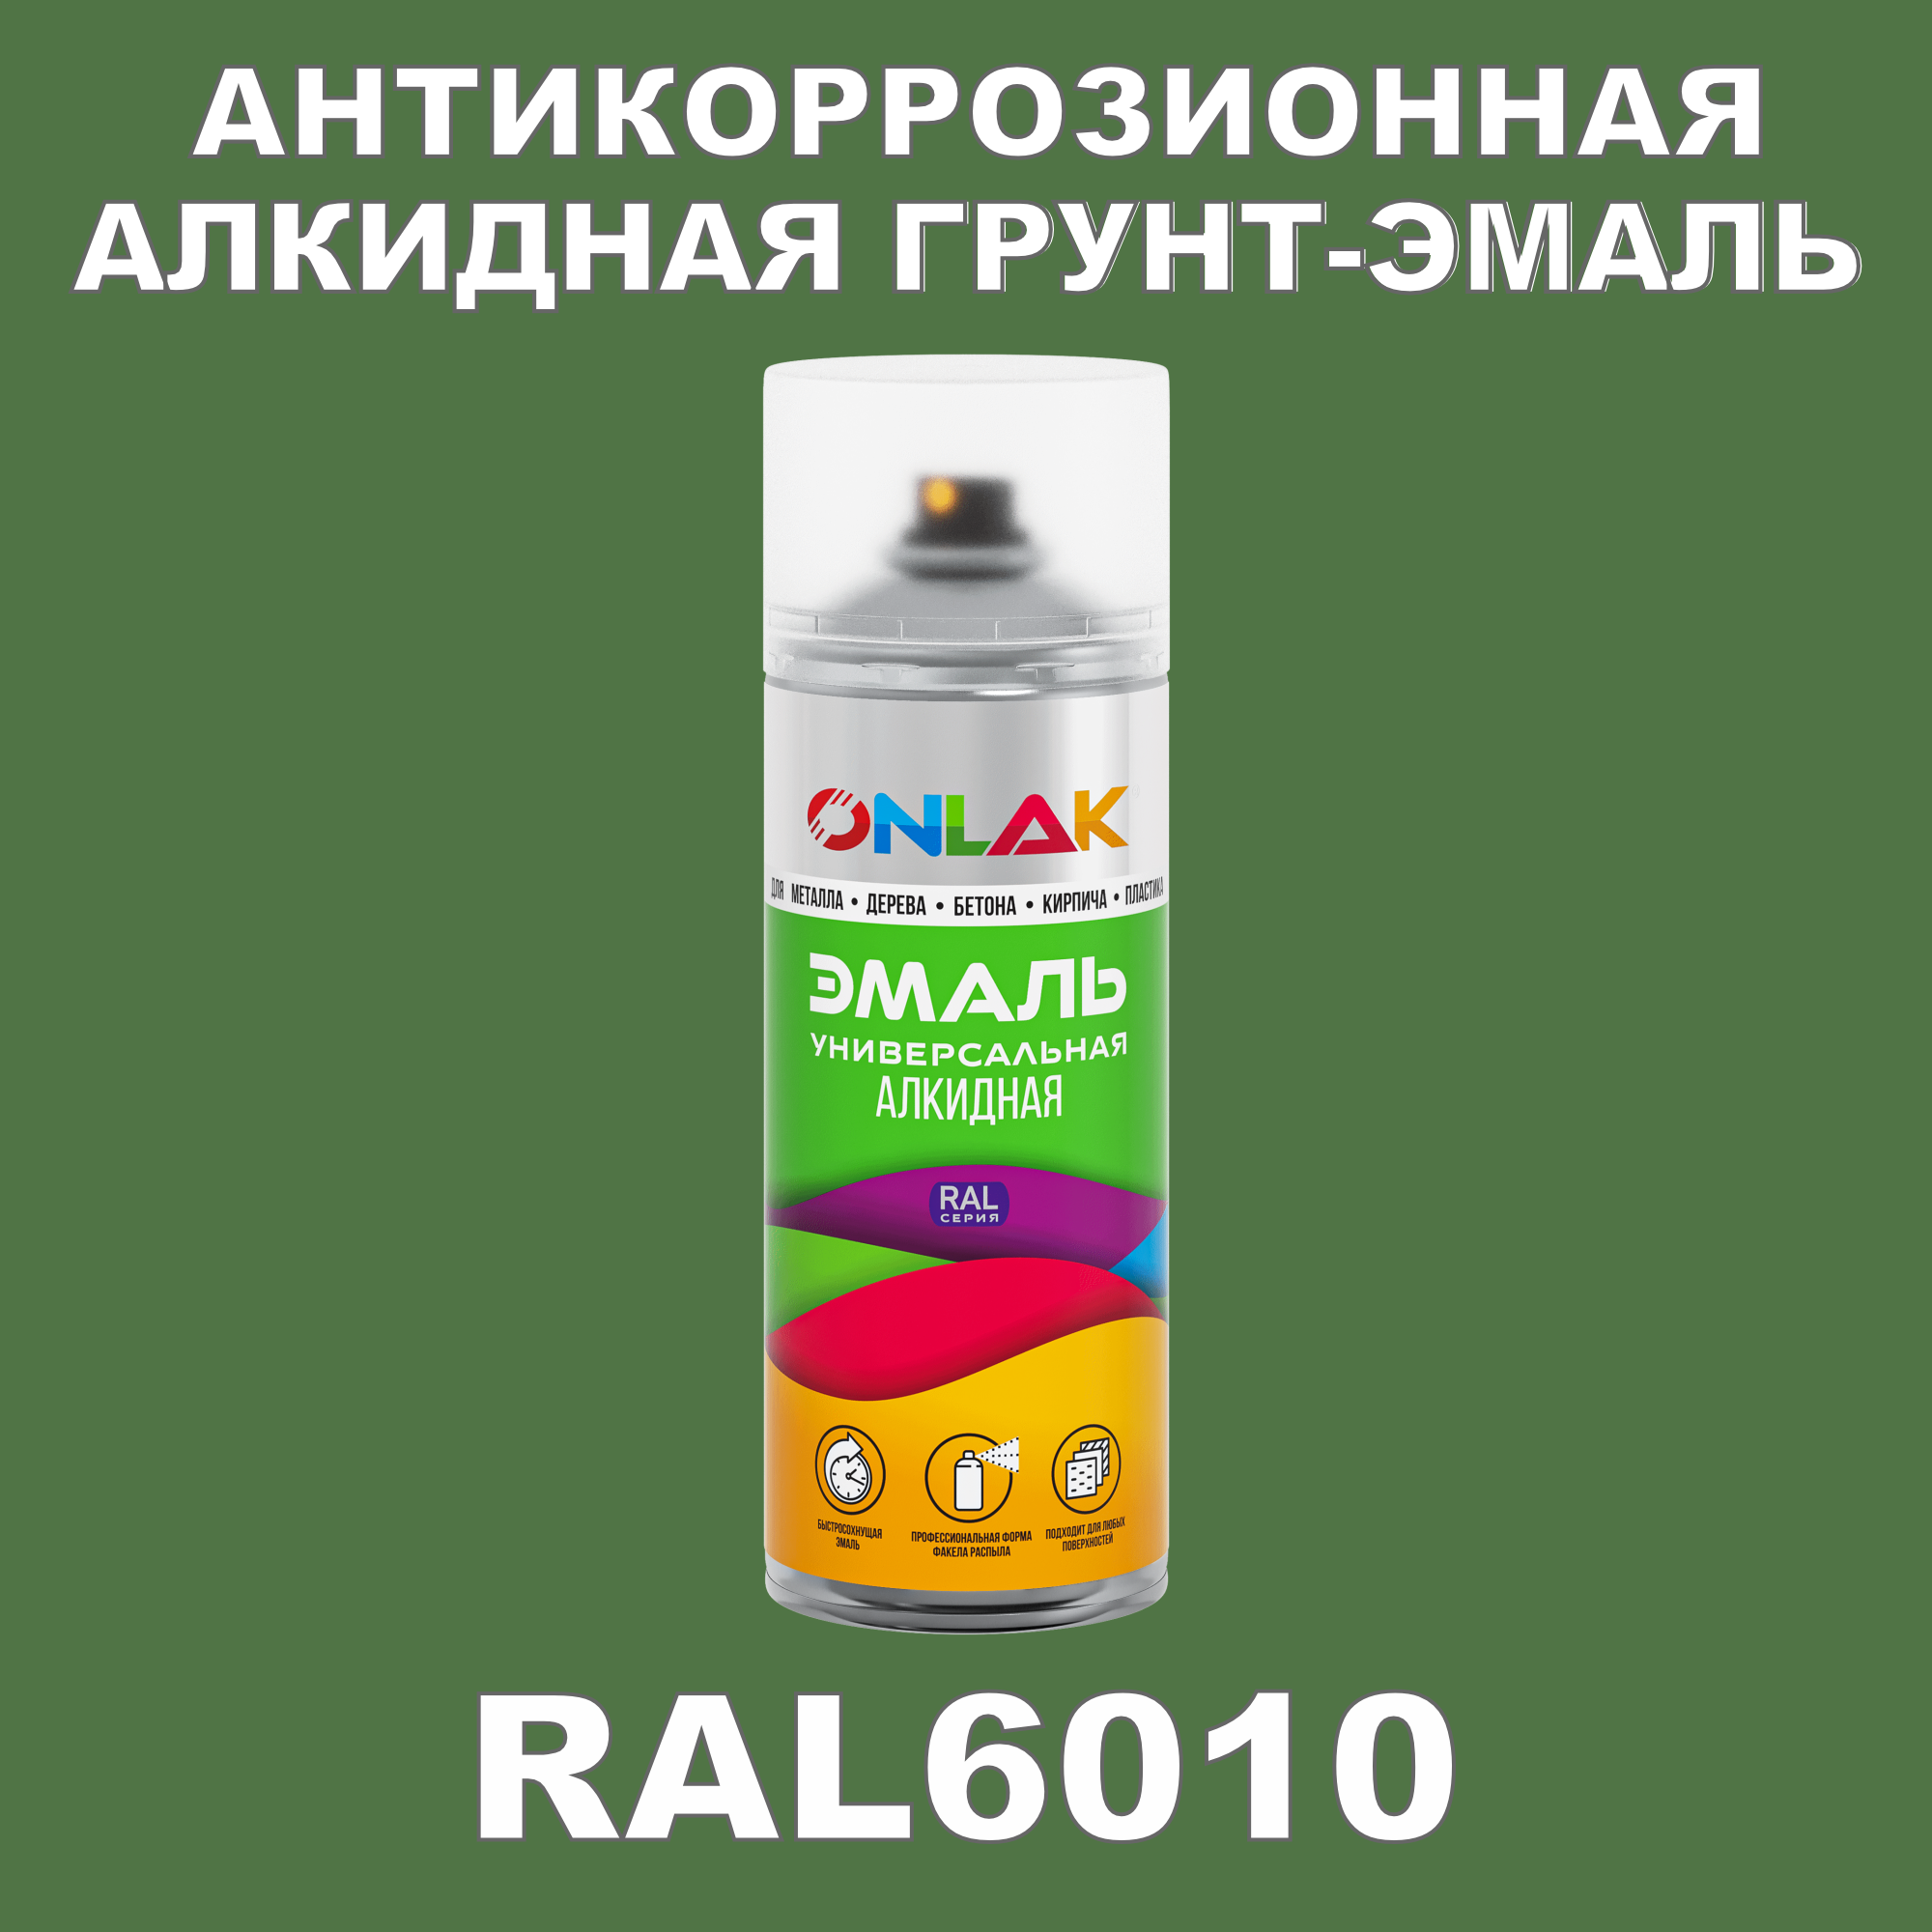 Антикоррозионная грунт-эмаль ONLAK RAL6010 полуматовая для металла и защиты от ржавчины